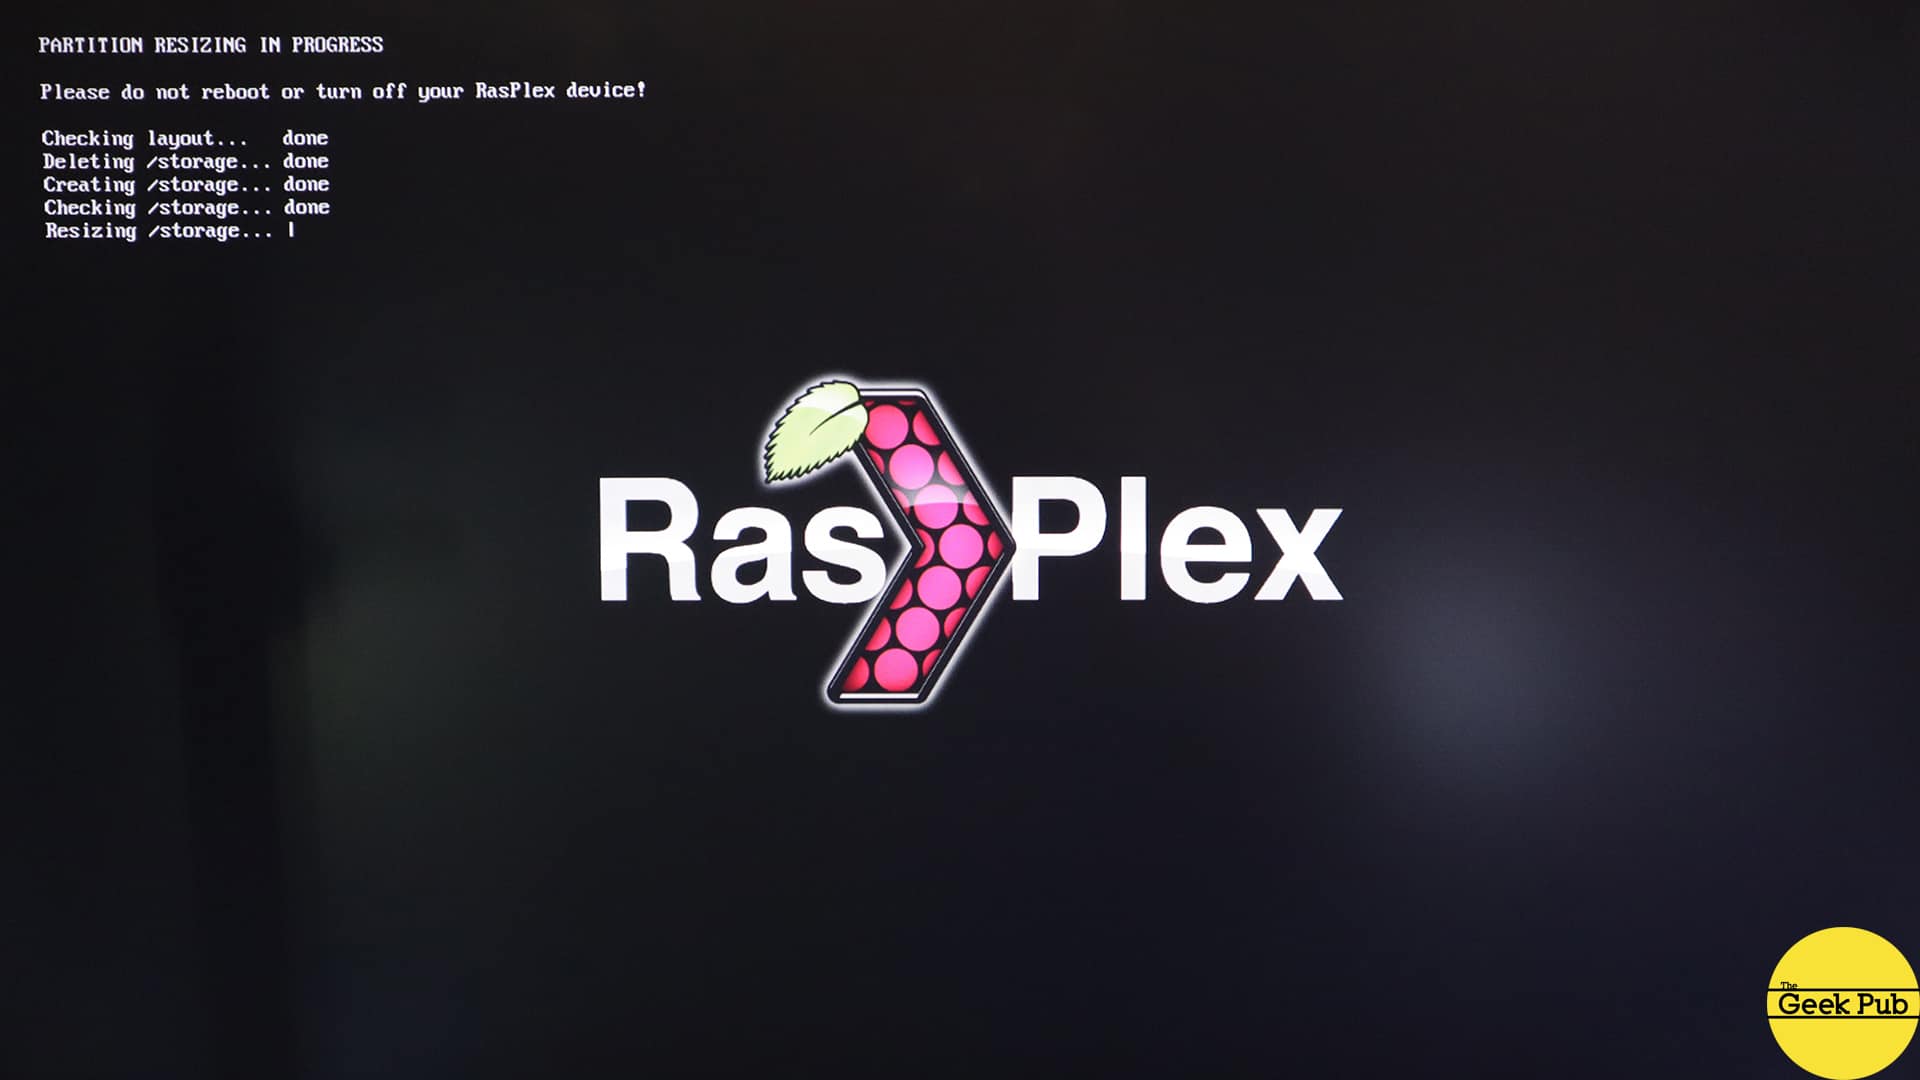 rasplex welcome screen